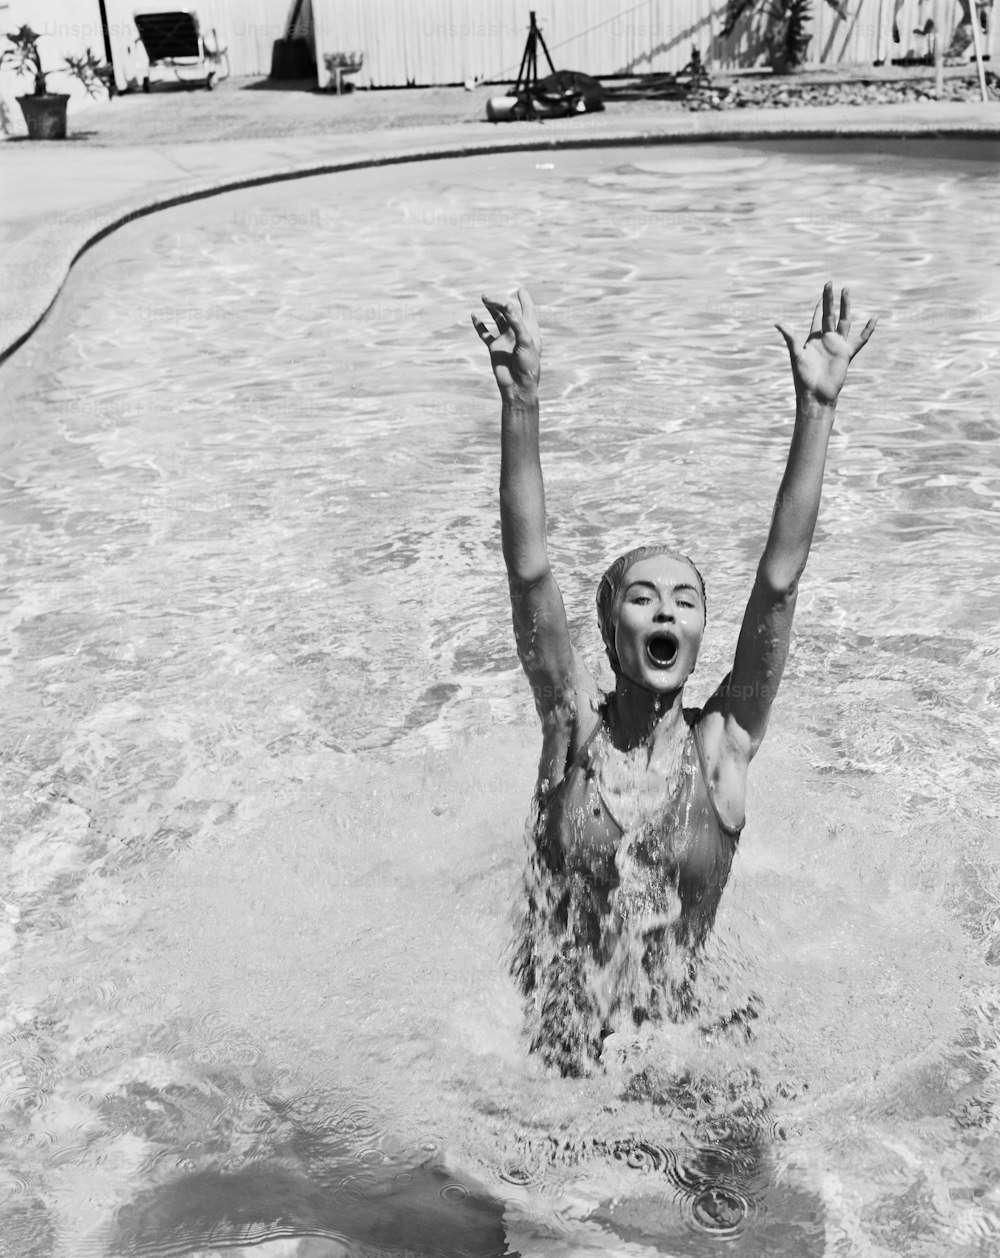 Una donna che nuota in una piscina con le mani alzate